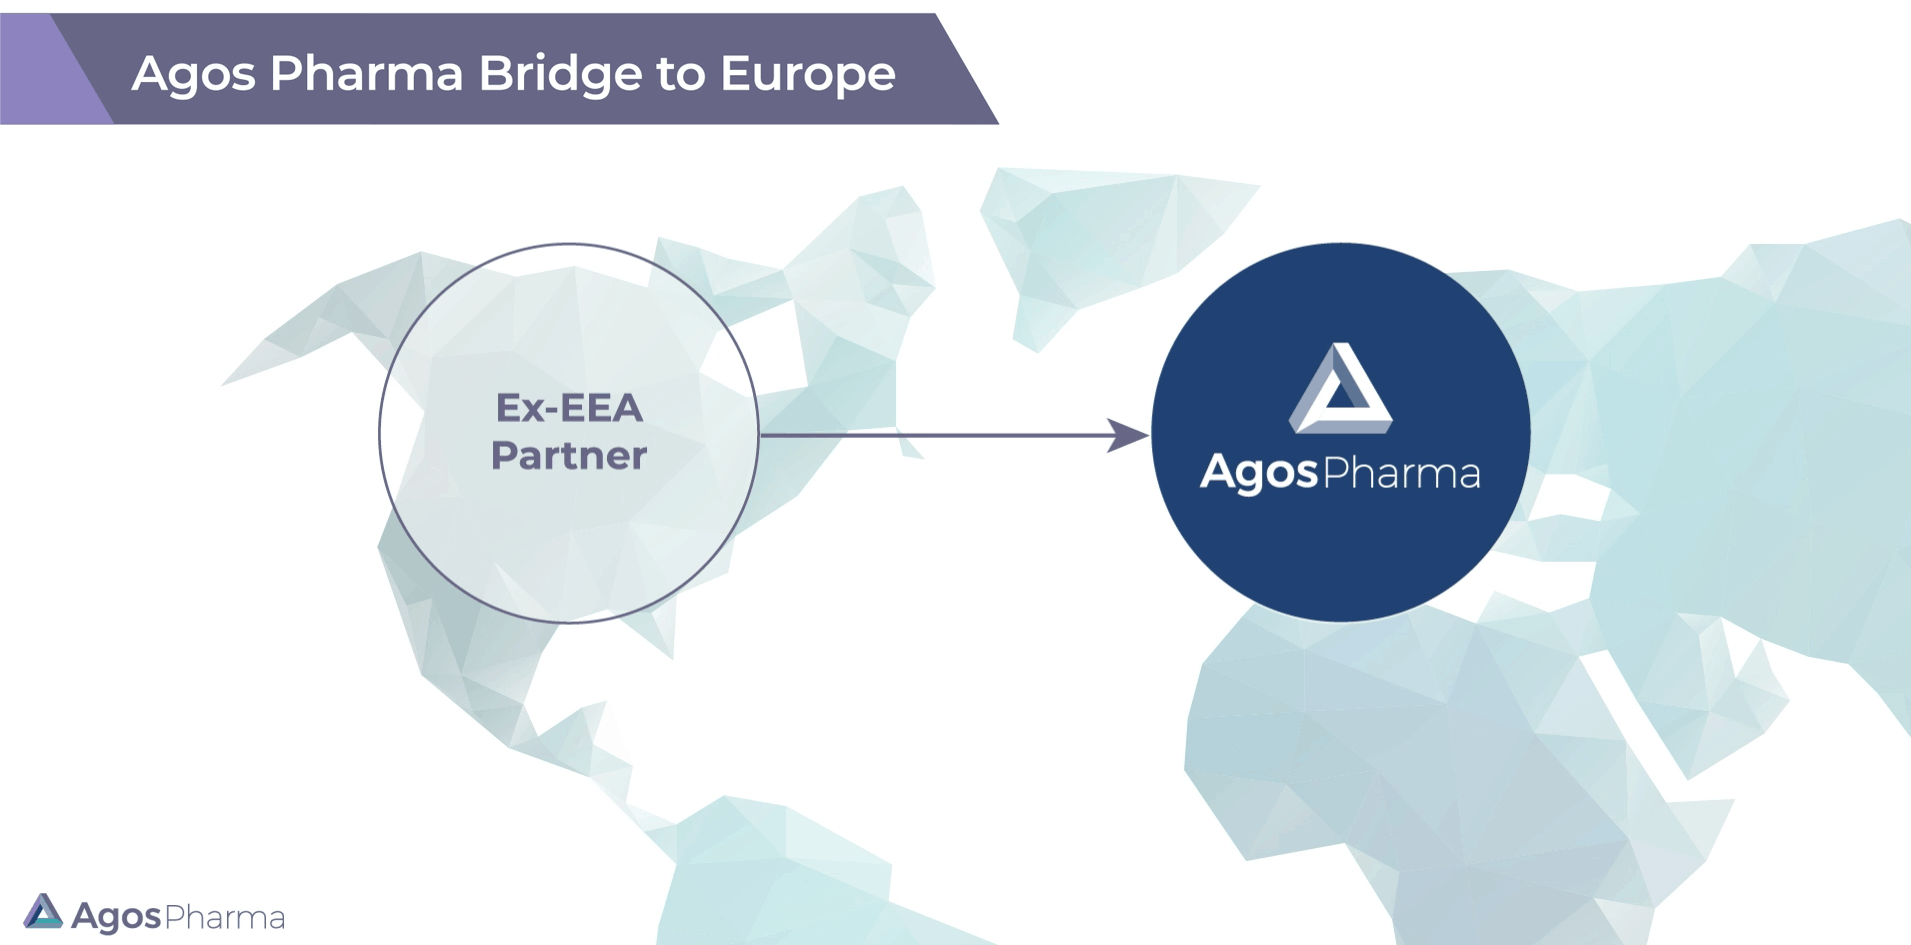 Agos Pharma Bridge to Europe